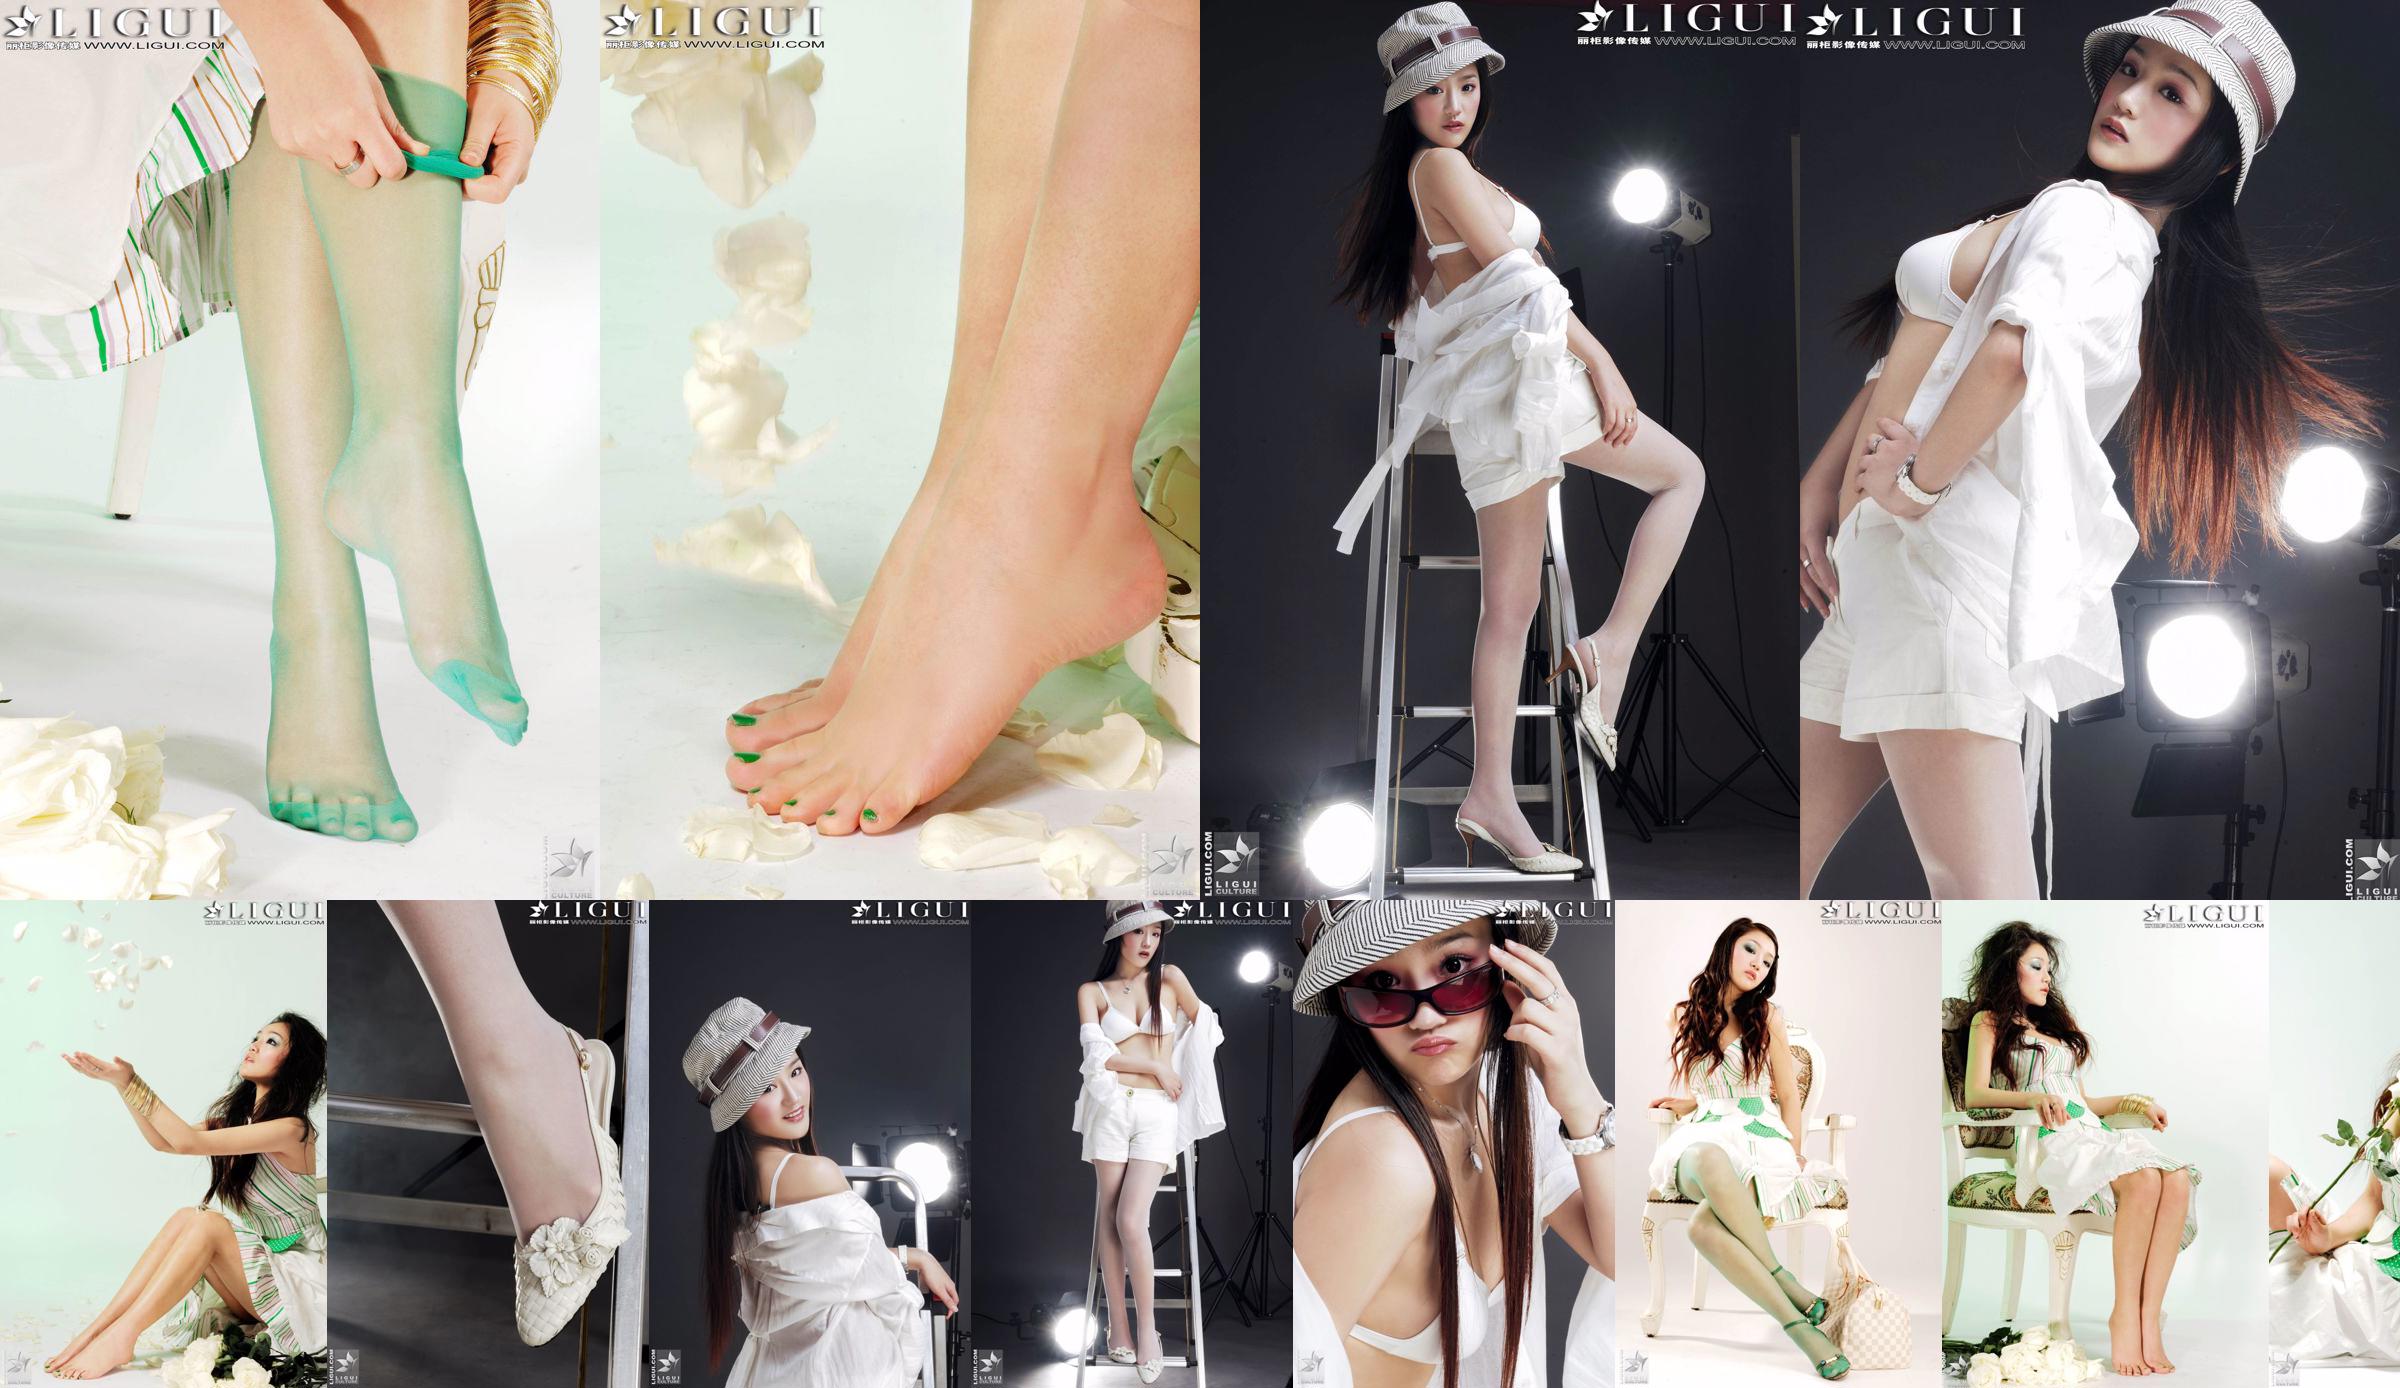 [丽柜贵足LiGui] Model Zhang Jingyan's "Fashionable Foot" photo of beautiful legs and silk feet No.bd8f14 Page 1